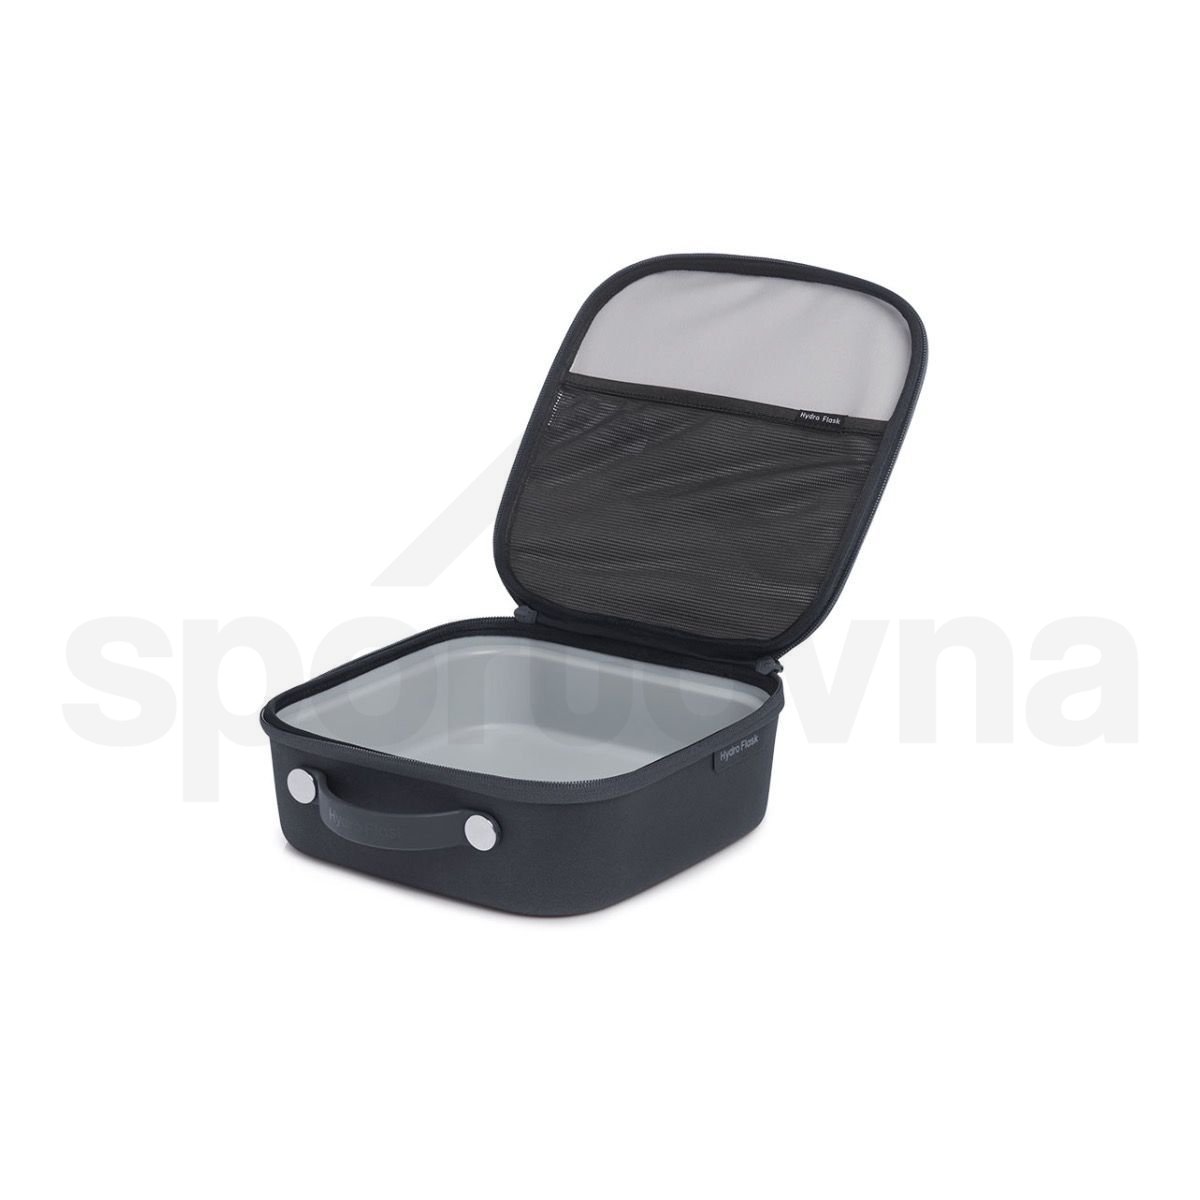 Obědová krabička Hydro Flask Small Insulated Lunch Box - černá